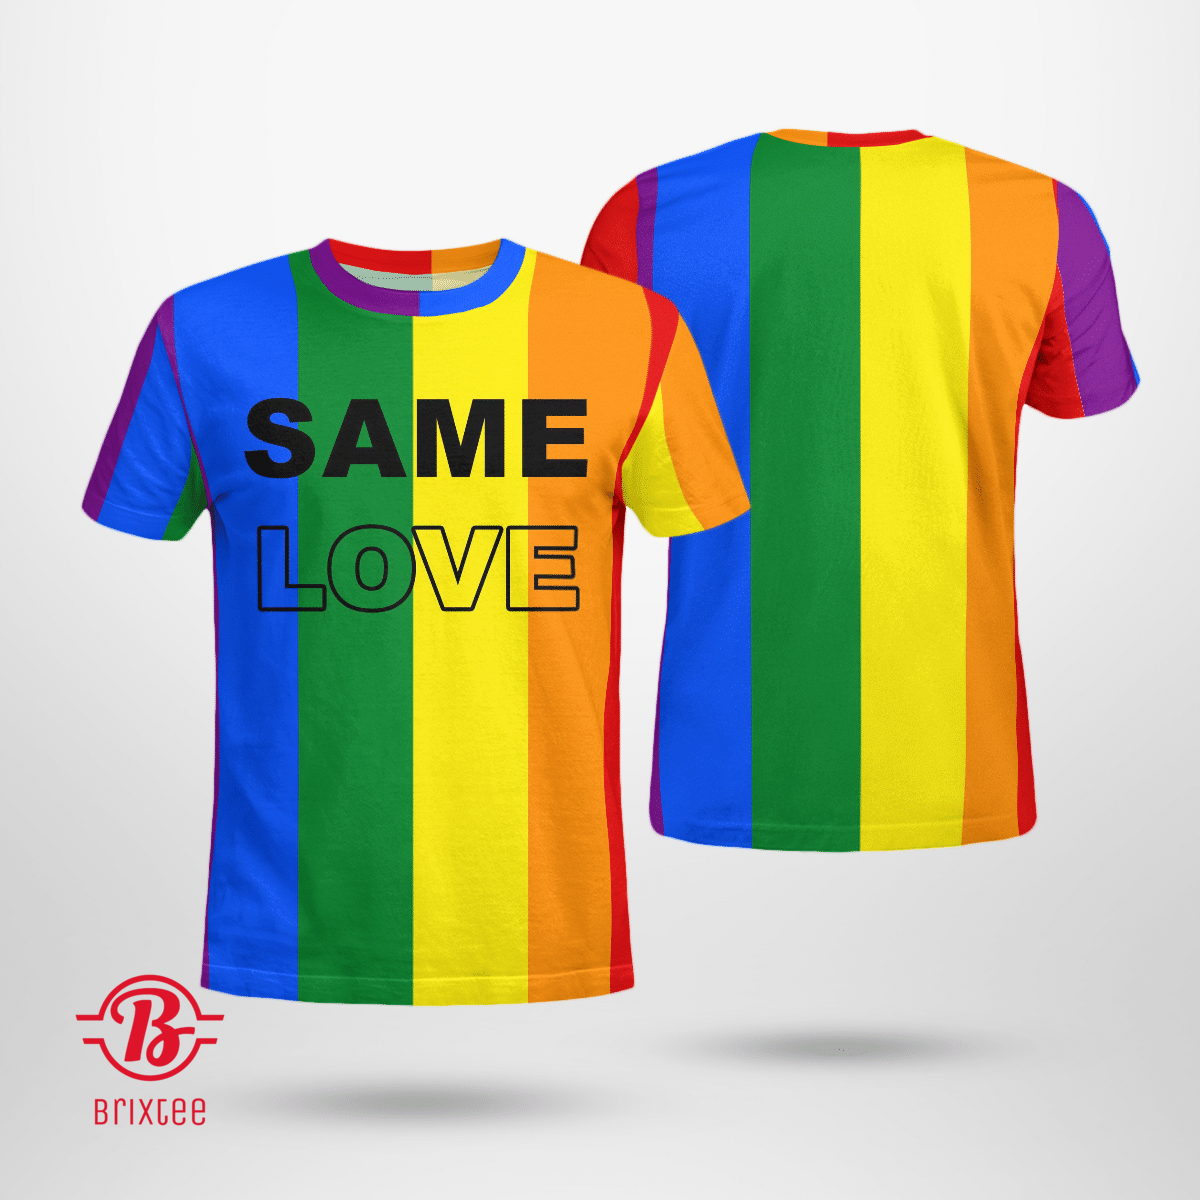 Same Love LGBTQ - Same Love Pride